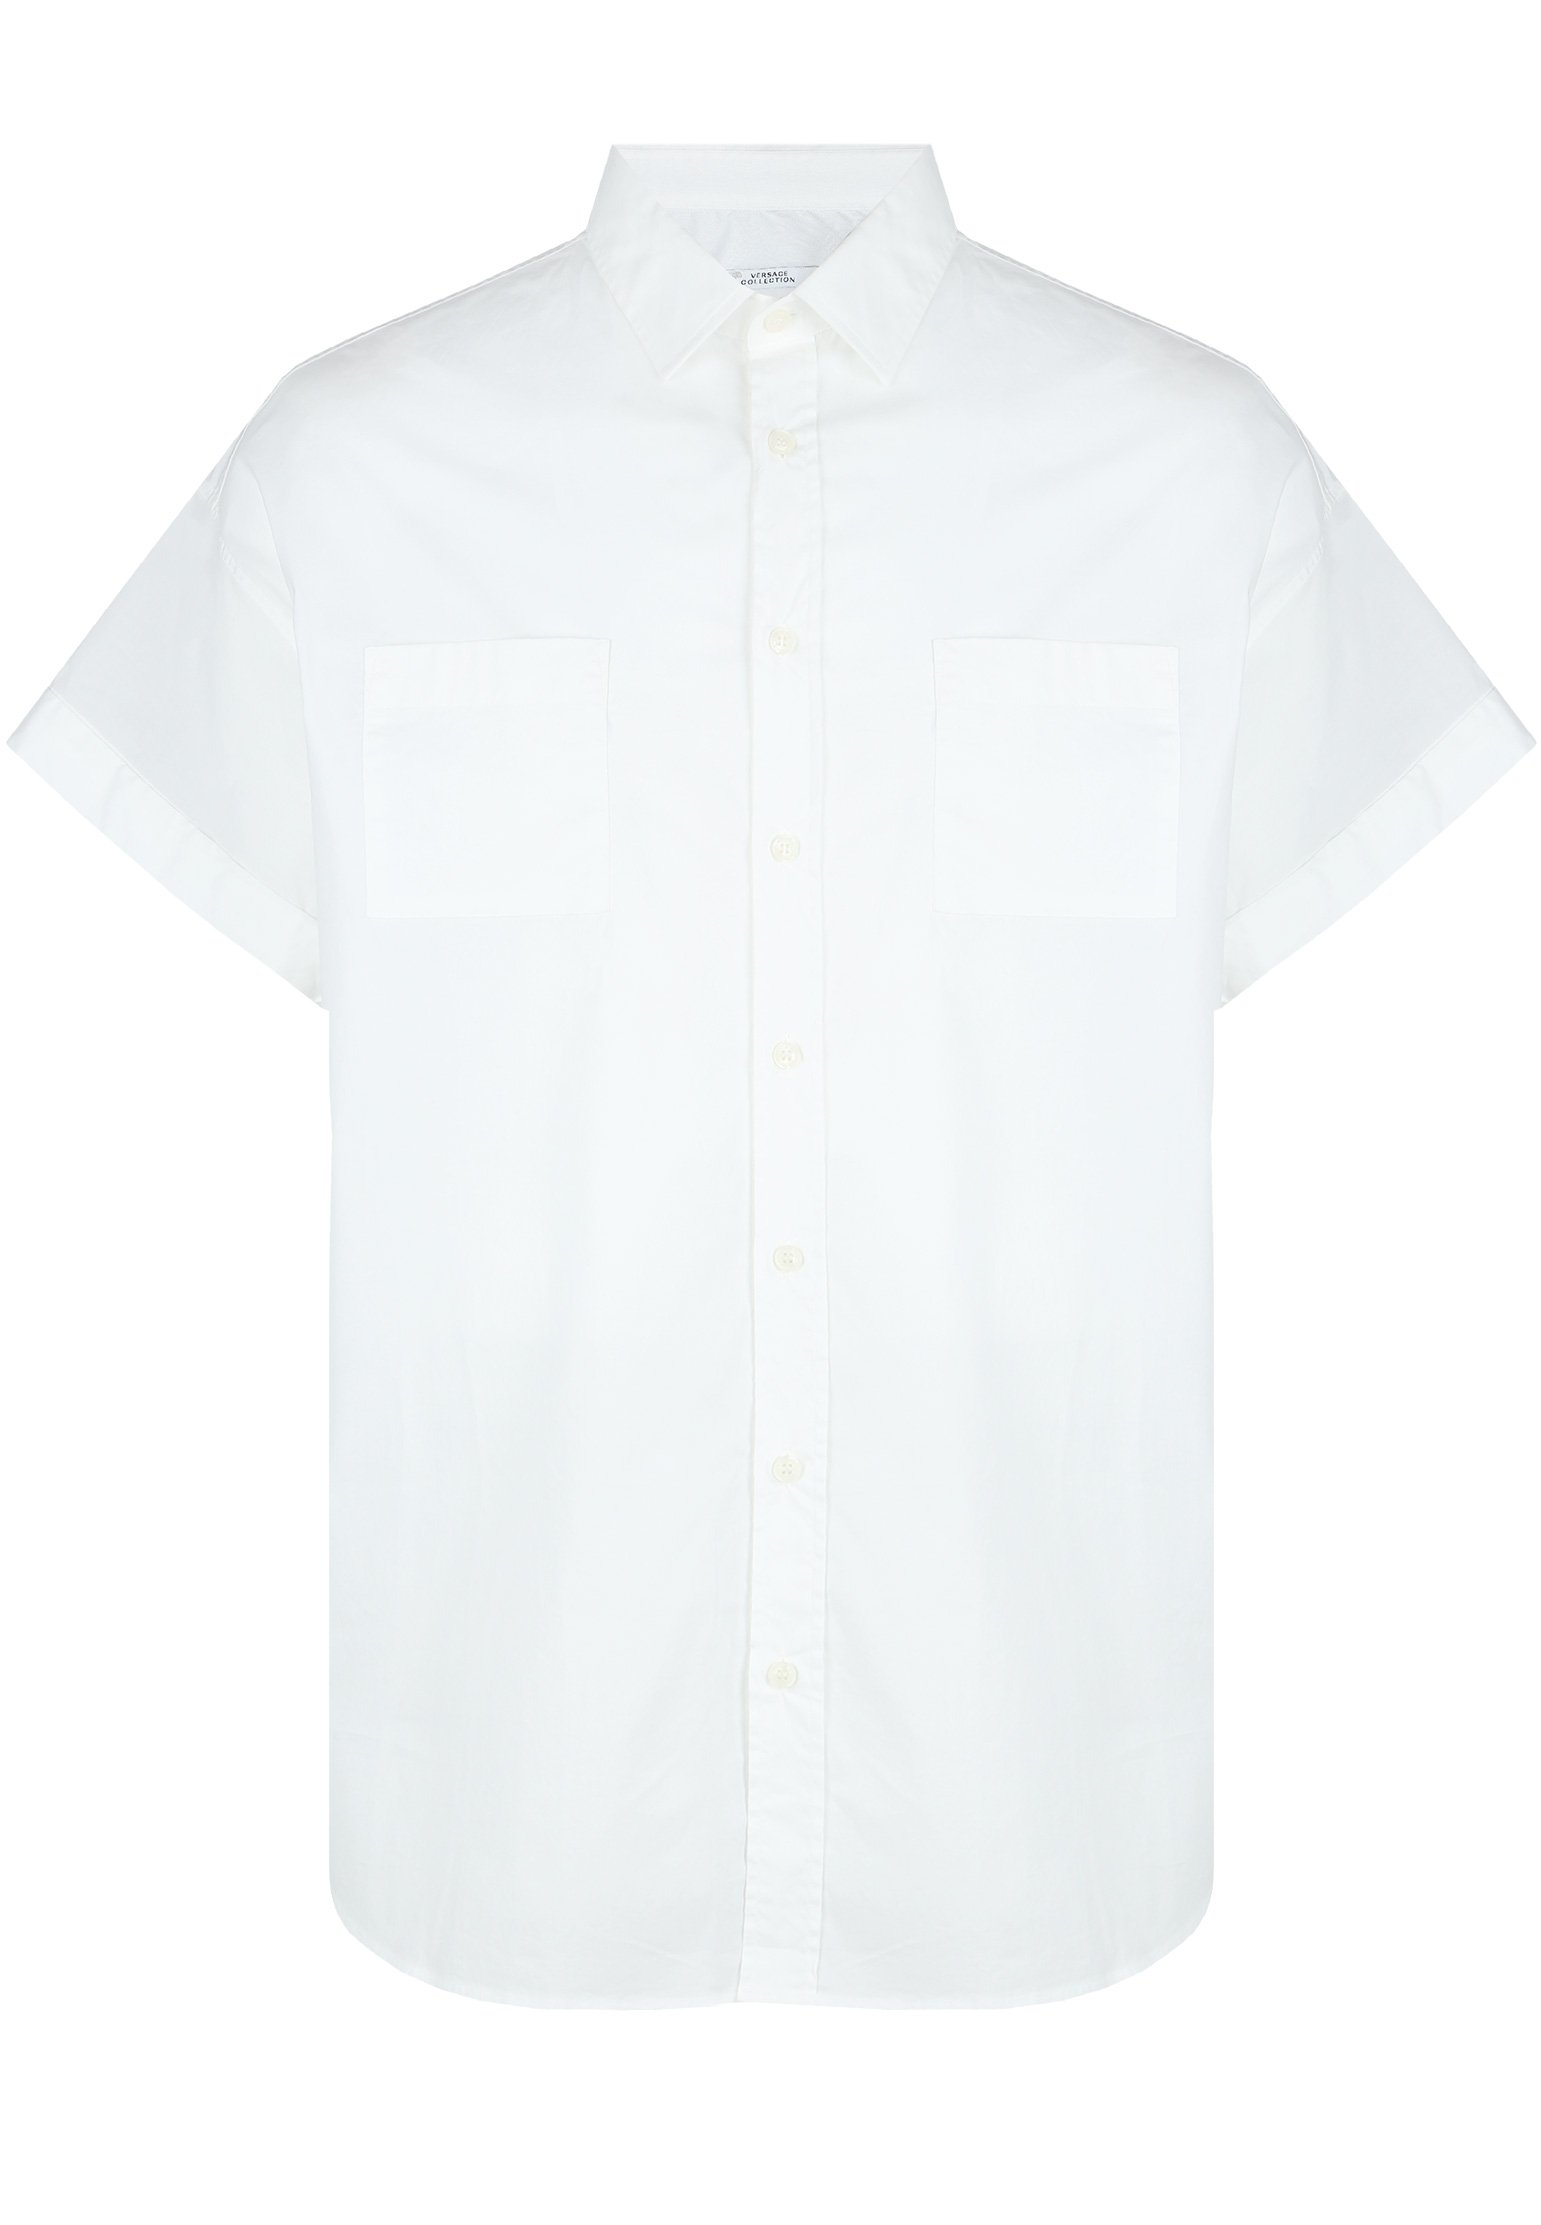 Рубашка мужская Versace Collection 100570 белая 45